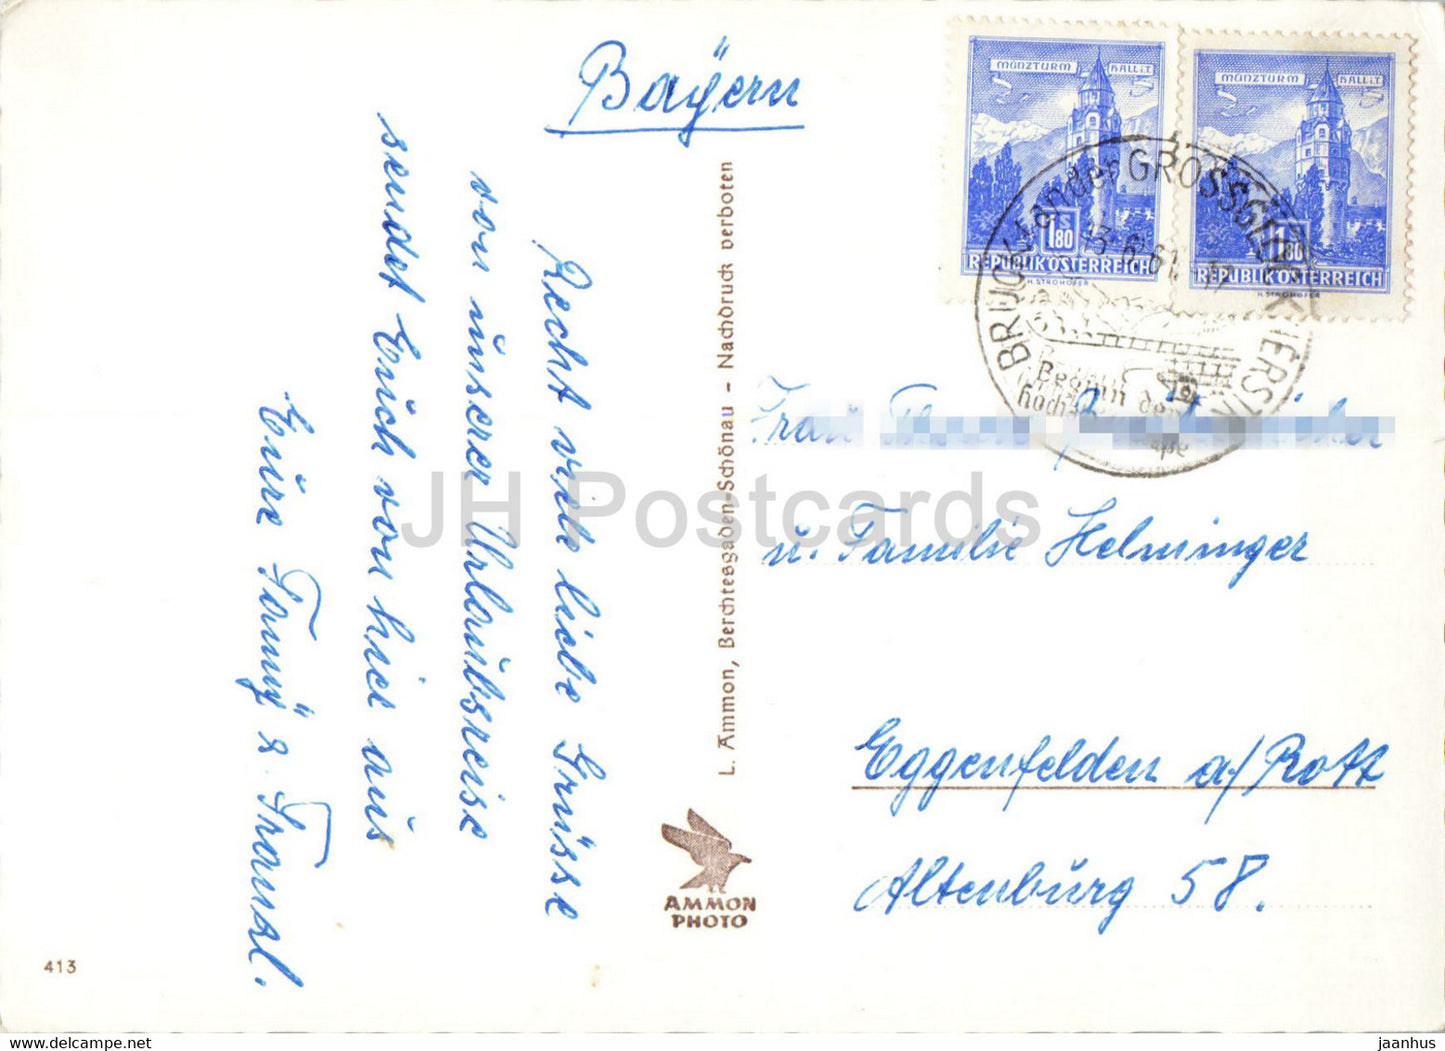 Heiligen Blut mit Grossglockner - old postcard - 1961 - Austria - used